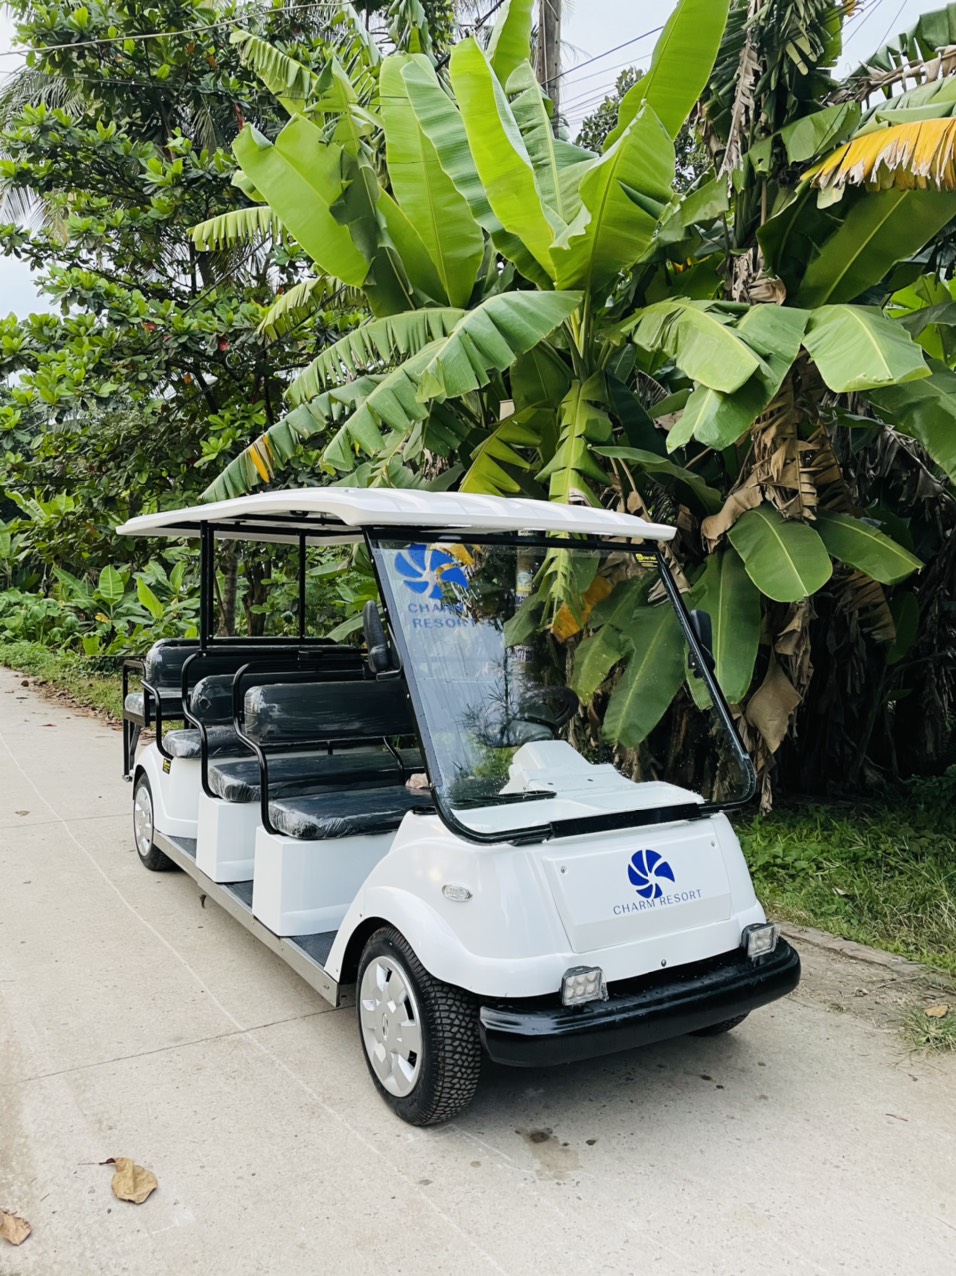 Charm Resort Long Hải sử dụng xe chạy điện đưa đón du khách trong khu với mong đợi mang lại trải nghiệm thư thái cho mỗi cá nhân ghé thăm